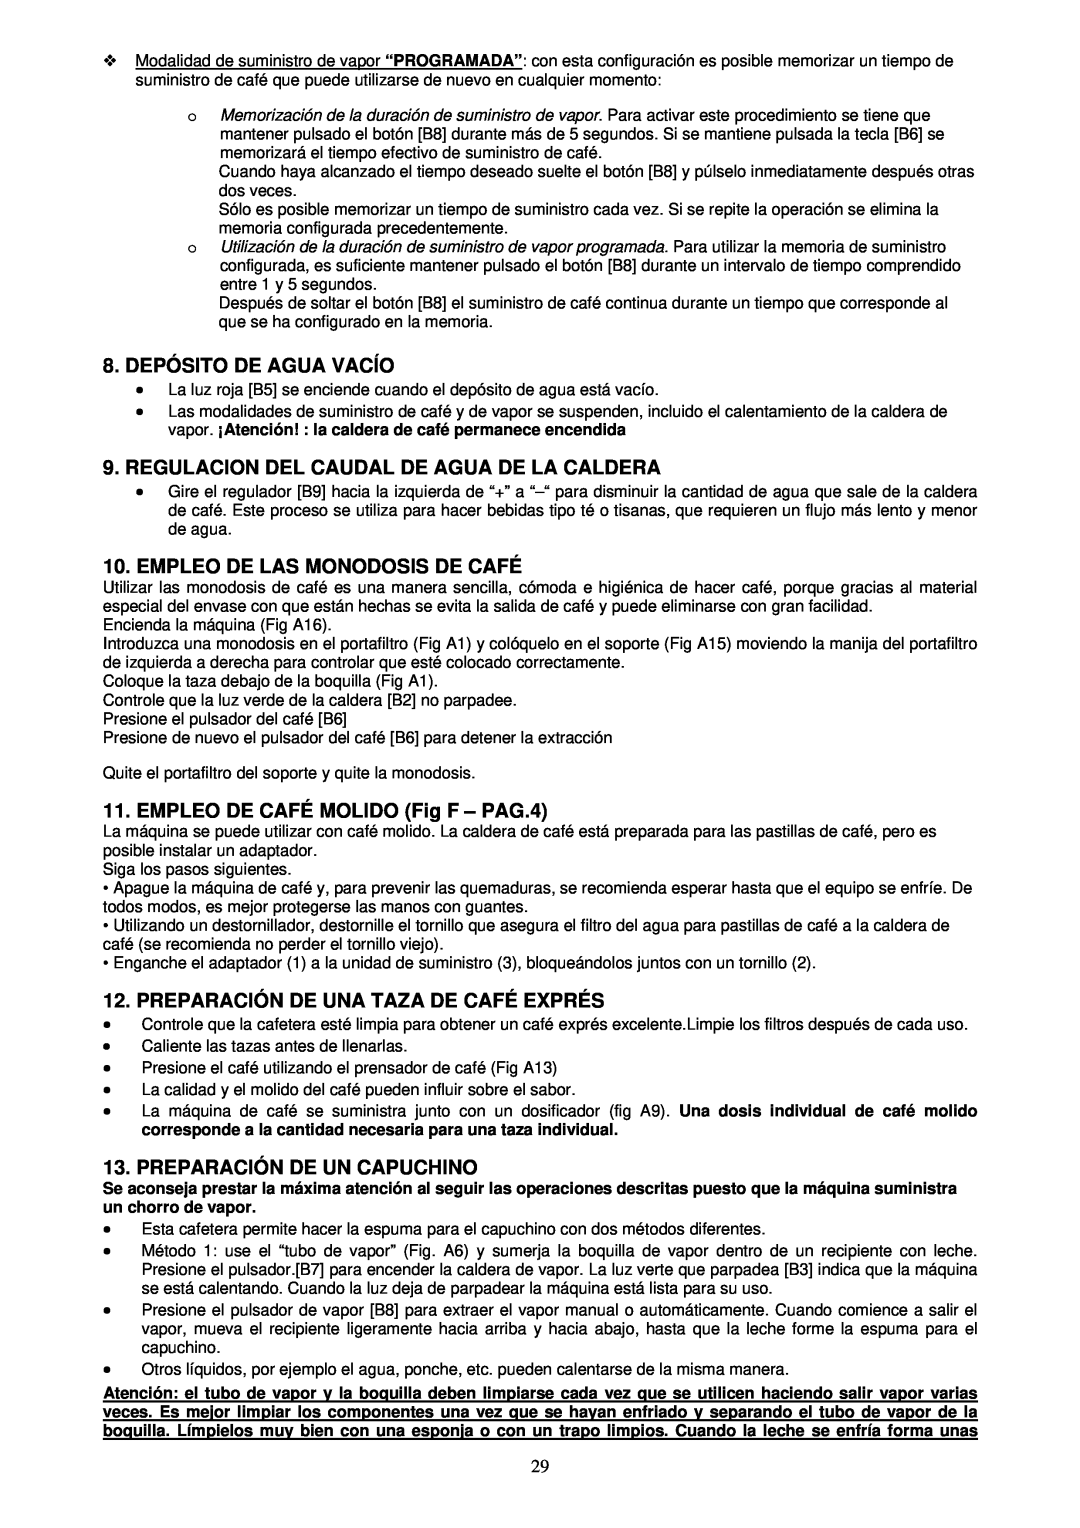 Candy BMC 60 X 8.DEPÓSITO DE AGUA VACÍO, Regulacion Del Caudal De Agua De La Caldera, Empleo De Las Monodosis De Café 